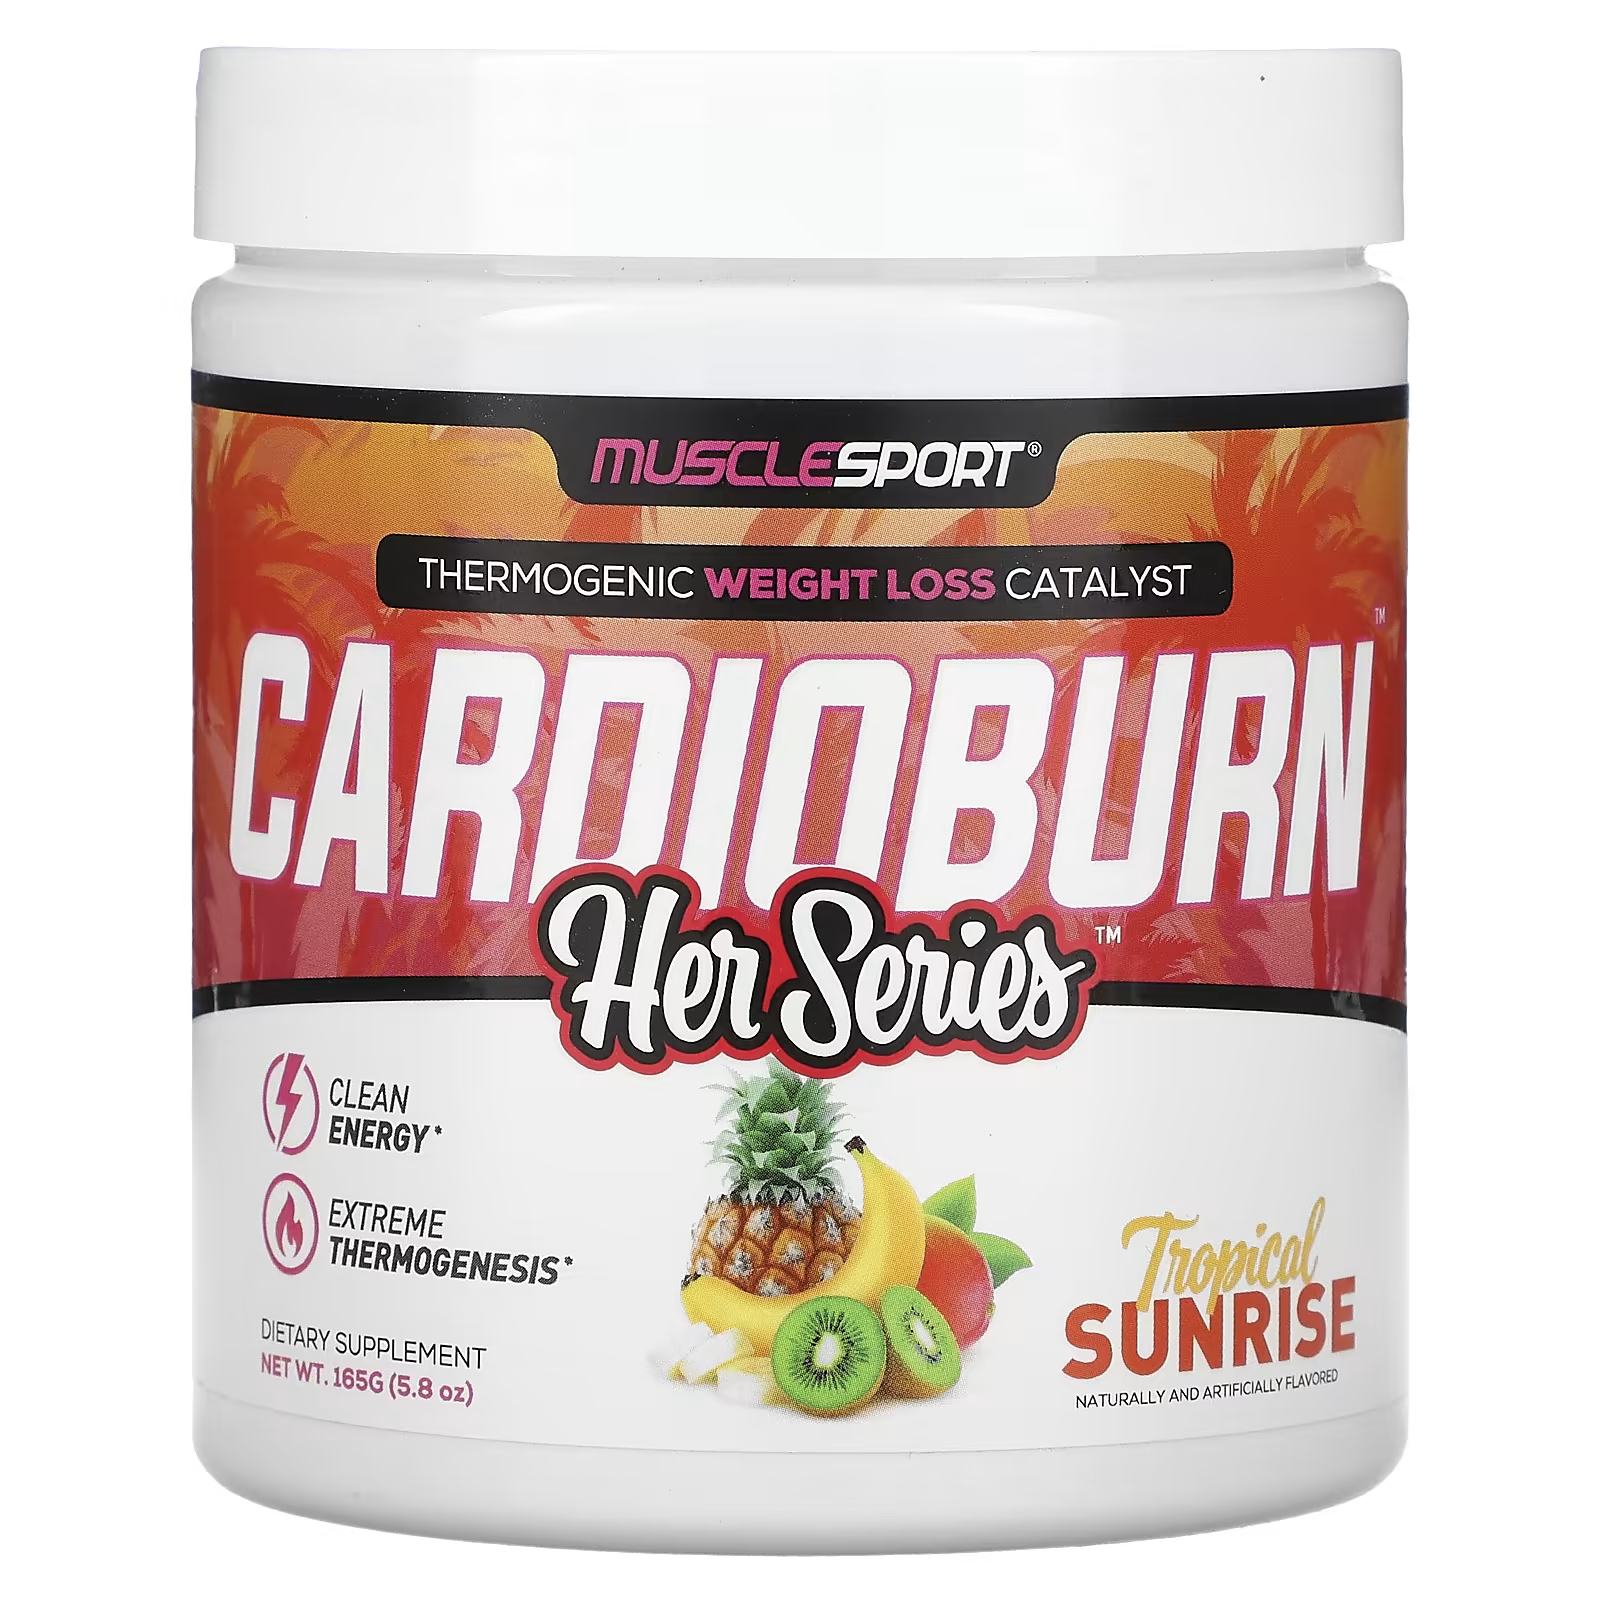 Пищевая добавка MuscleSport Her Series Cardioburn Tropical Sunrise, 165 г цена и фото